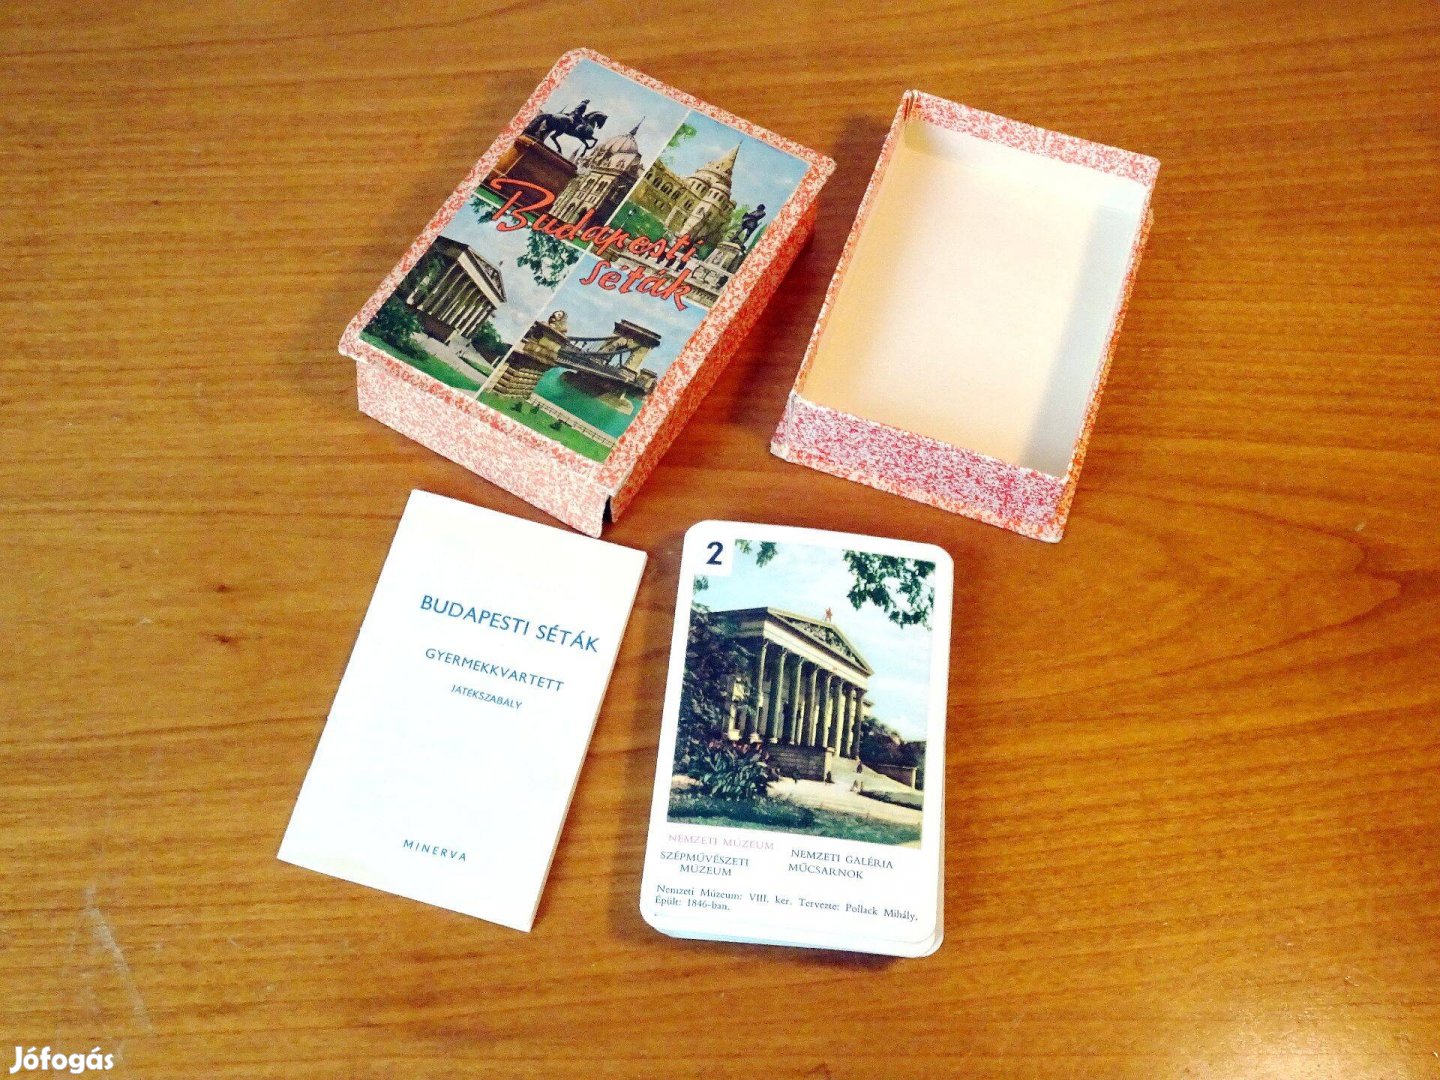 Budapesti séták kvartett játékkártya kártya hiánytalan 40 db